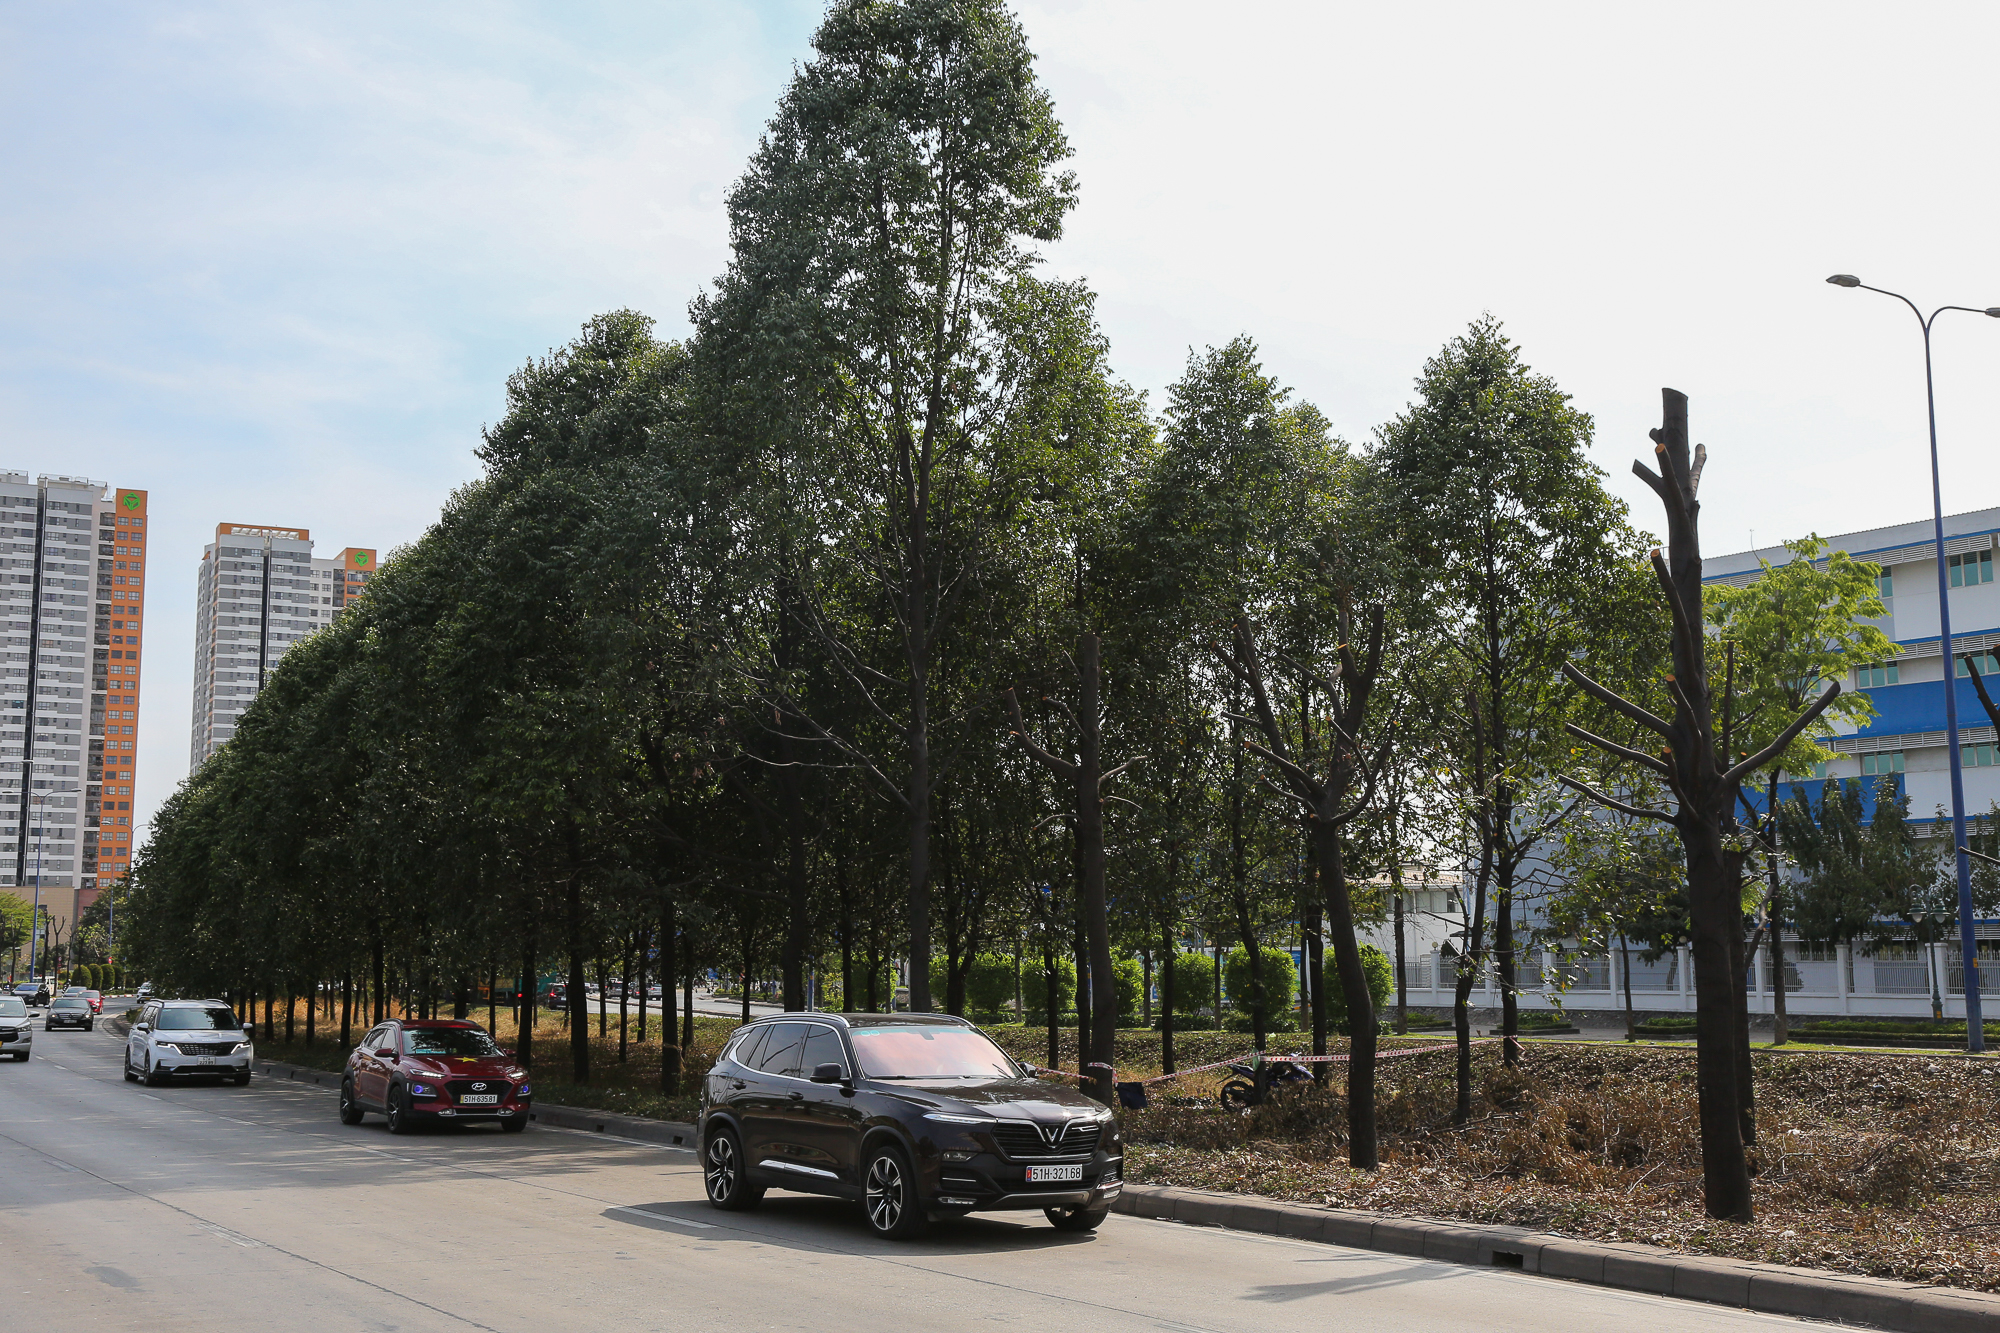 Cận cảnh di dời hơn 1.300 cây xanh trên đại lộ ở TP.HCM để xây dựng nút giao 3 tầng - Ảnh 12.